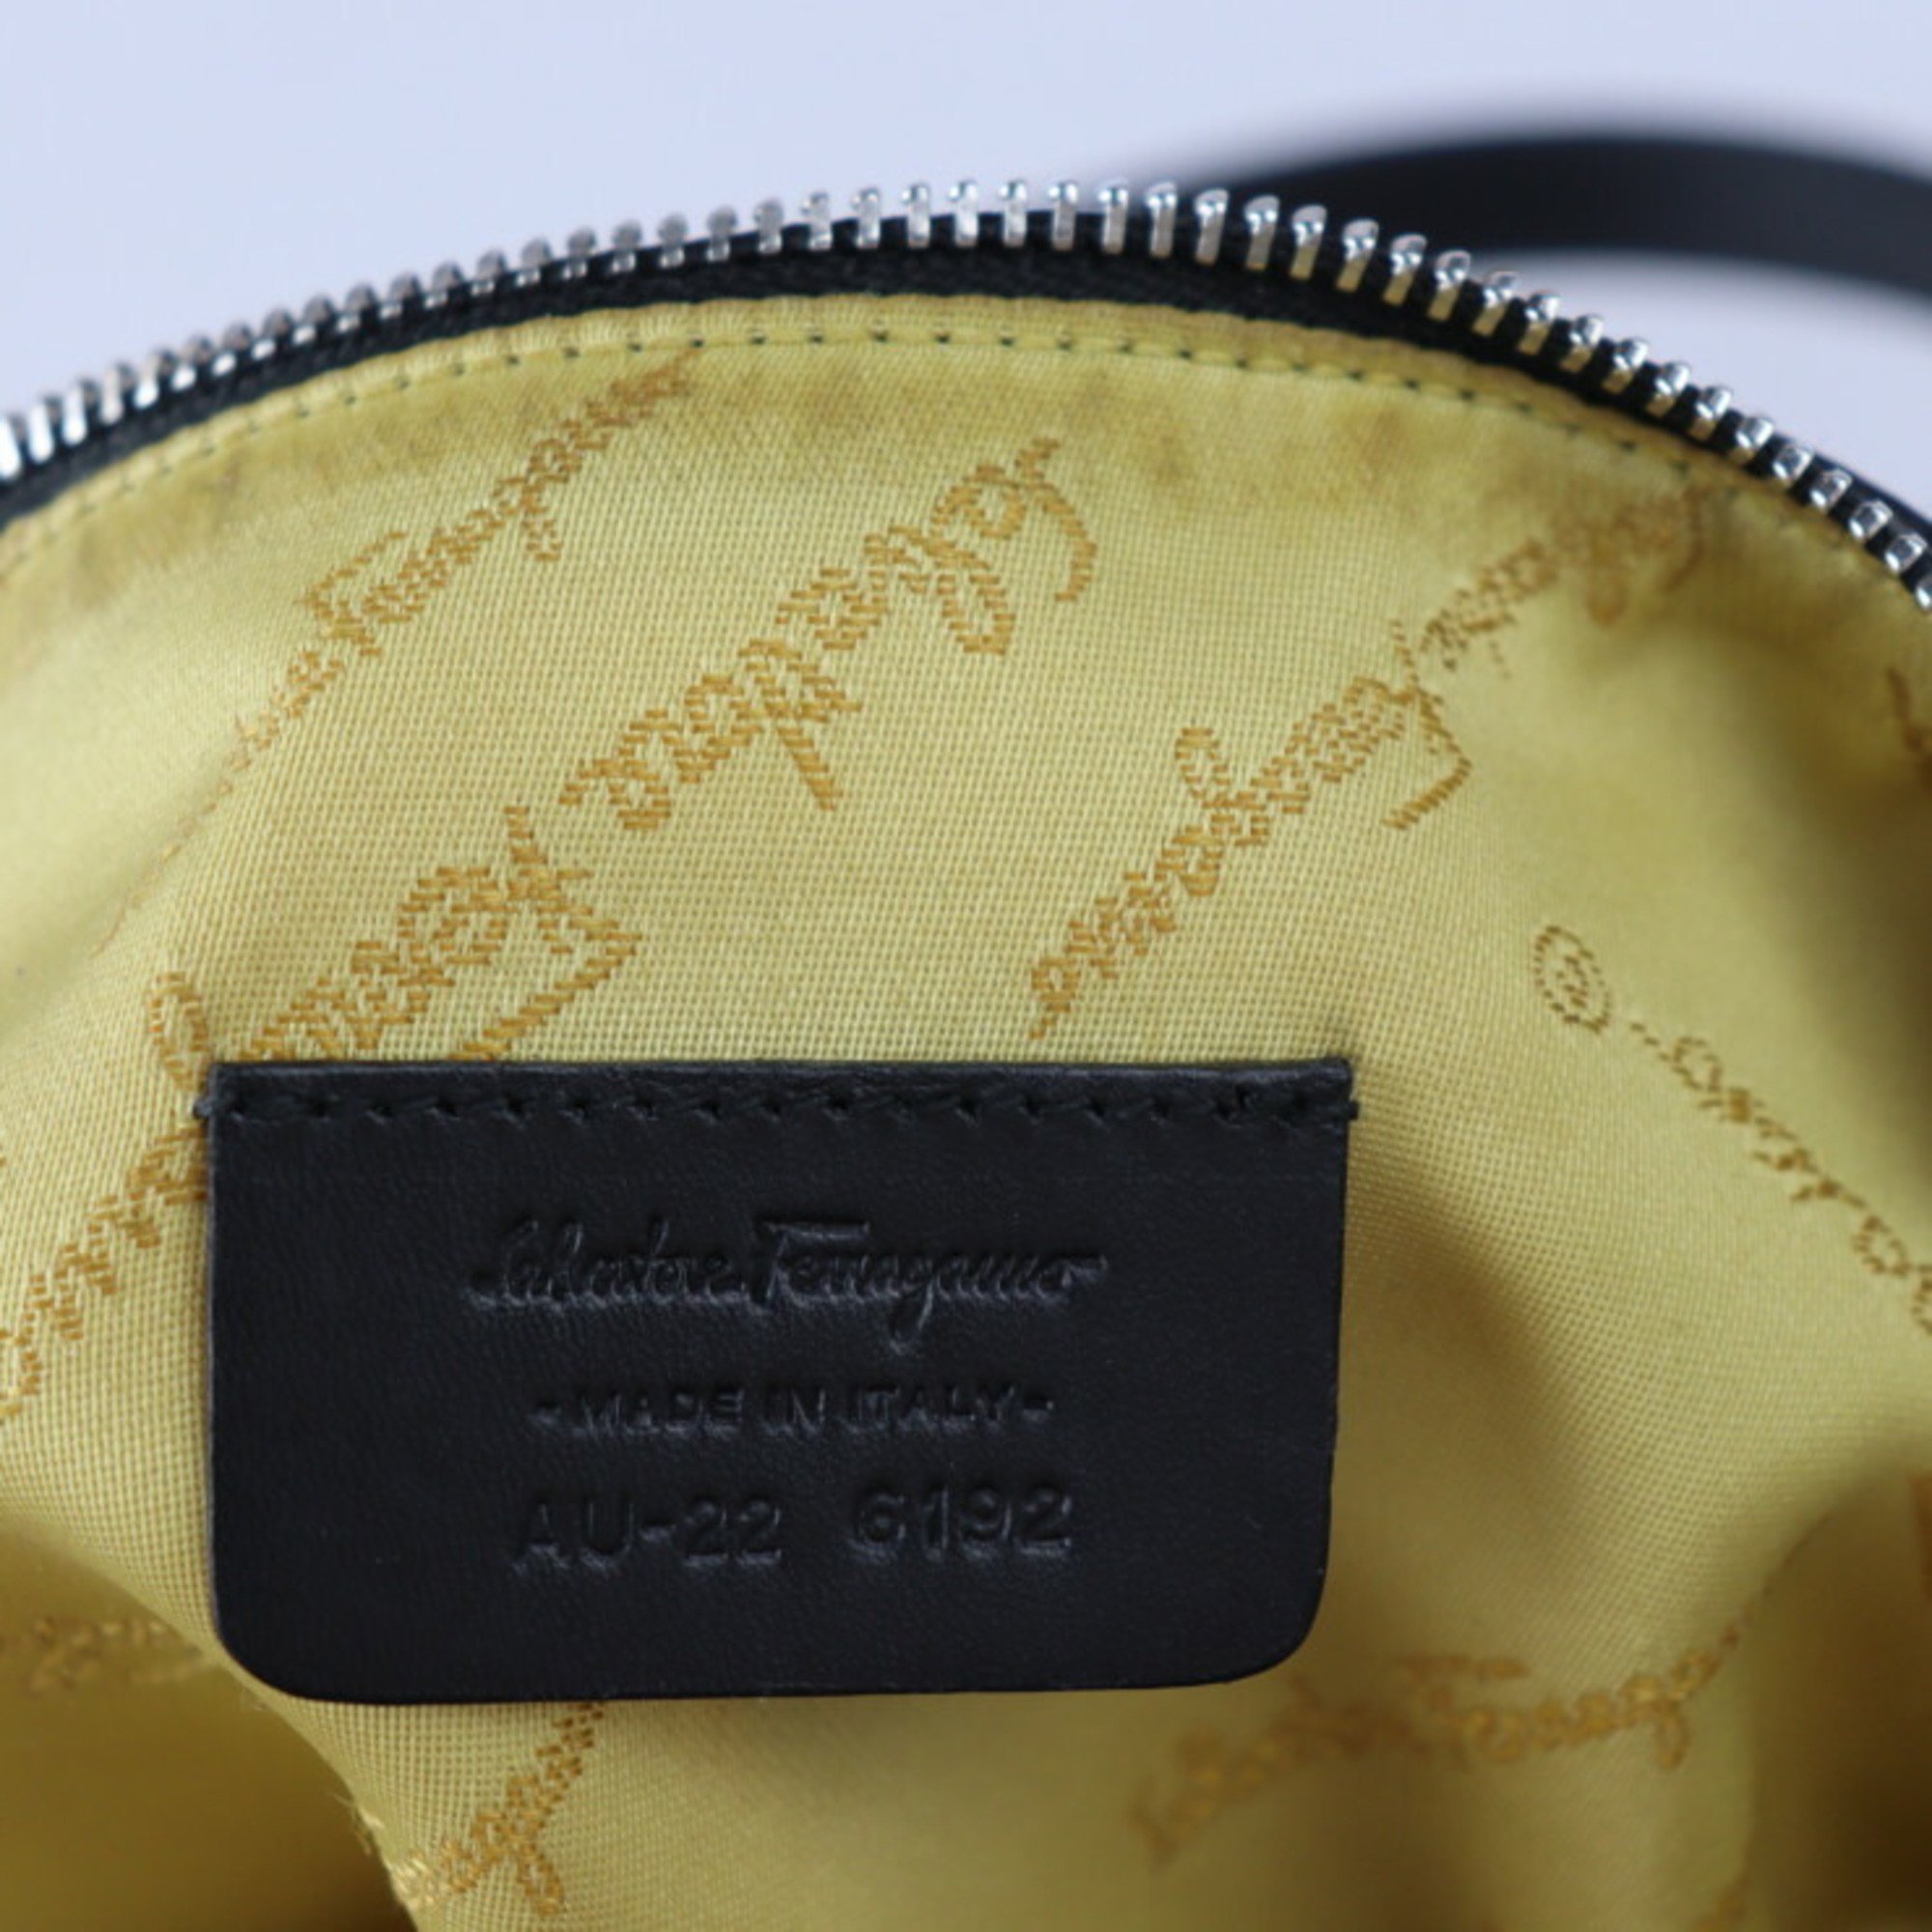 Salvatore Ferragamo Hand Pouch Handbag 22 6192 Nylon Leather Black Multicolor Silver Hardware Mini Bag